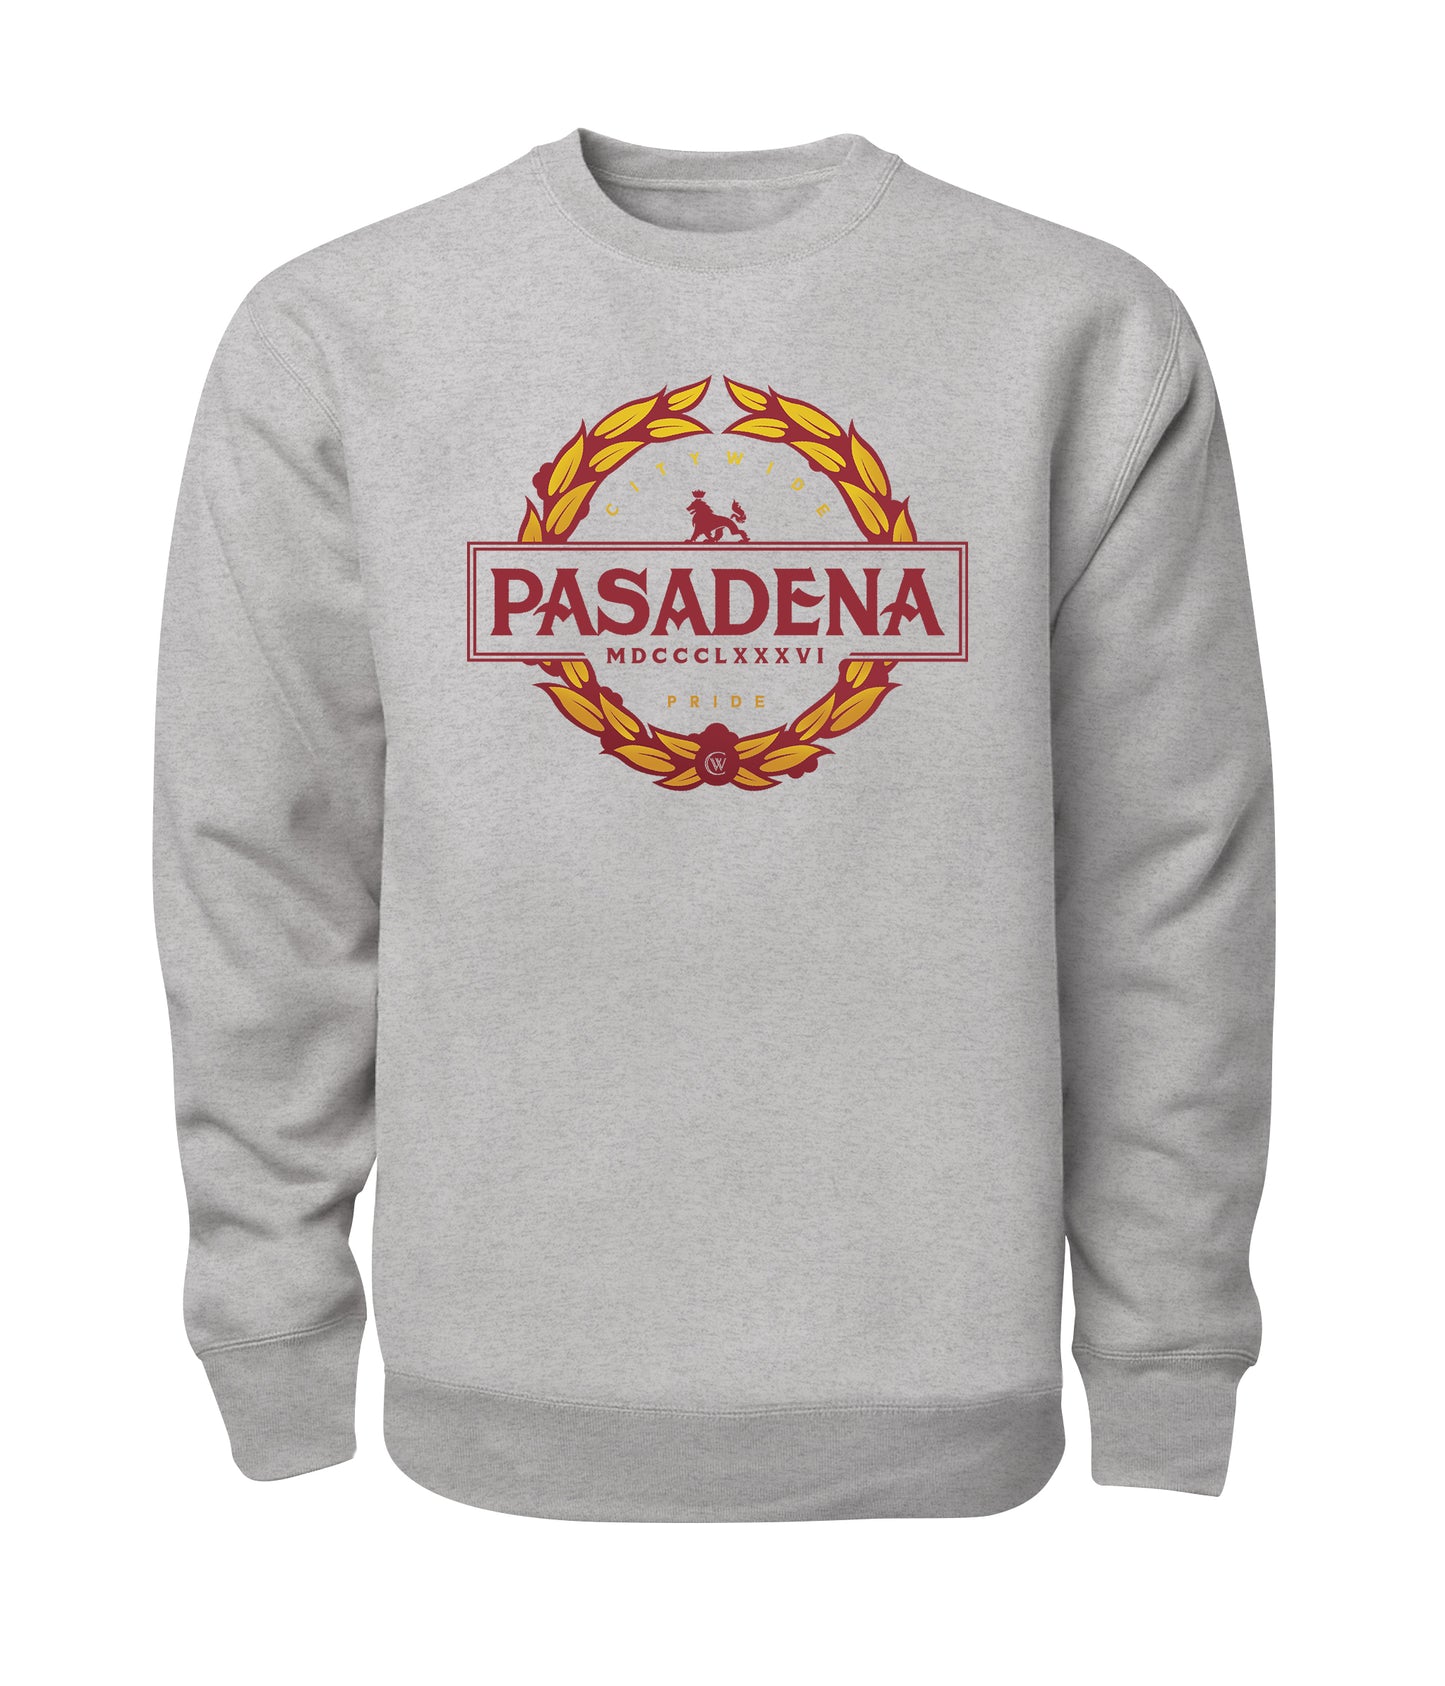 Pasadena The Pride Crewneck Sweatshirt